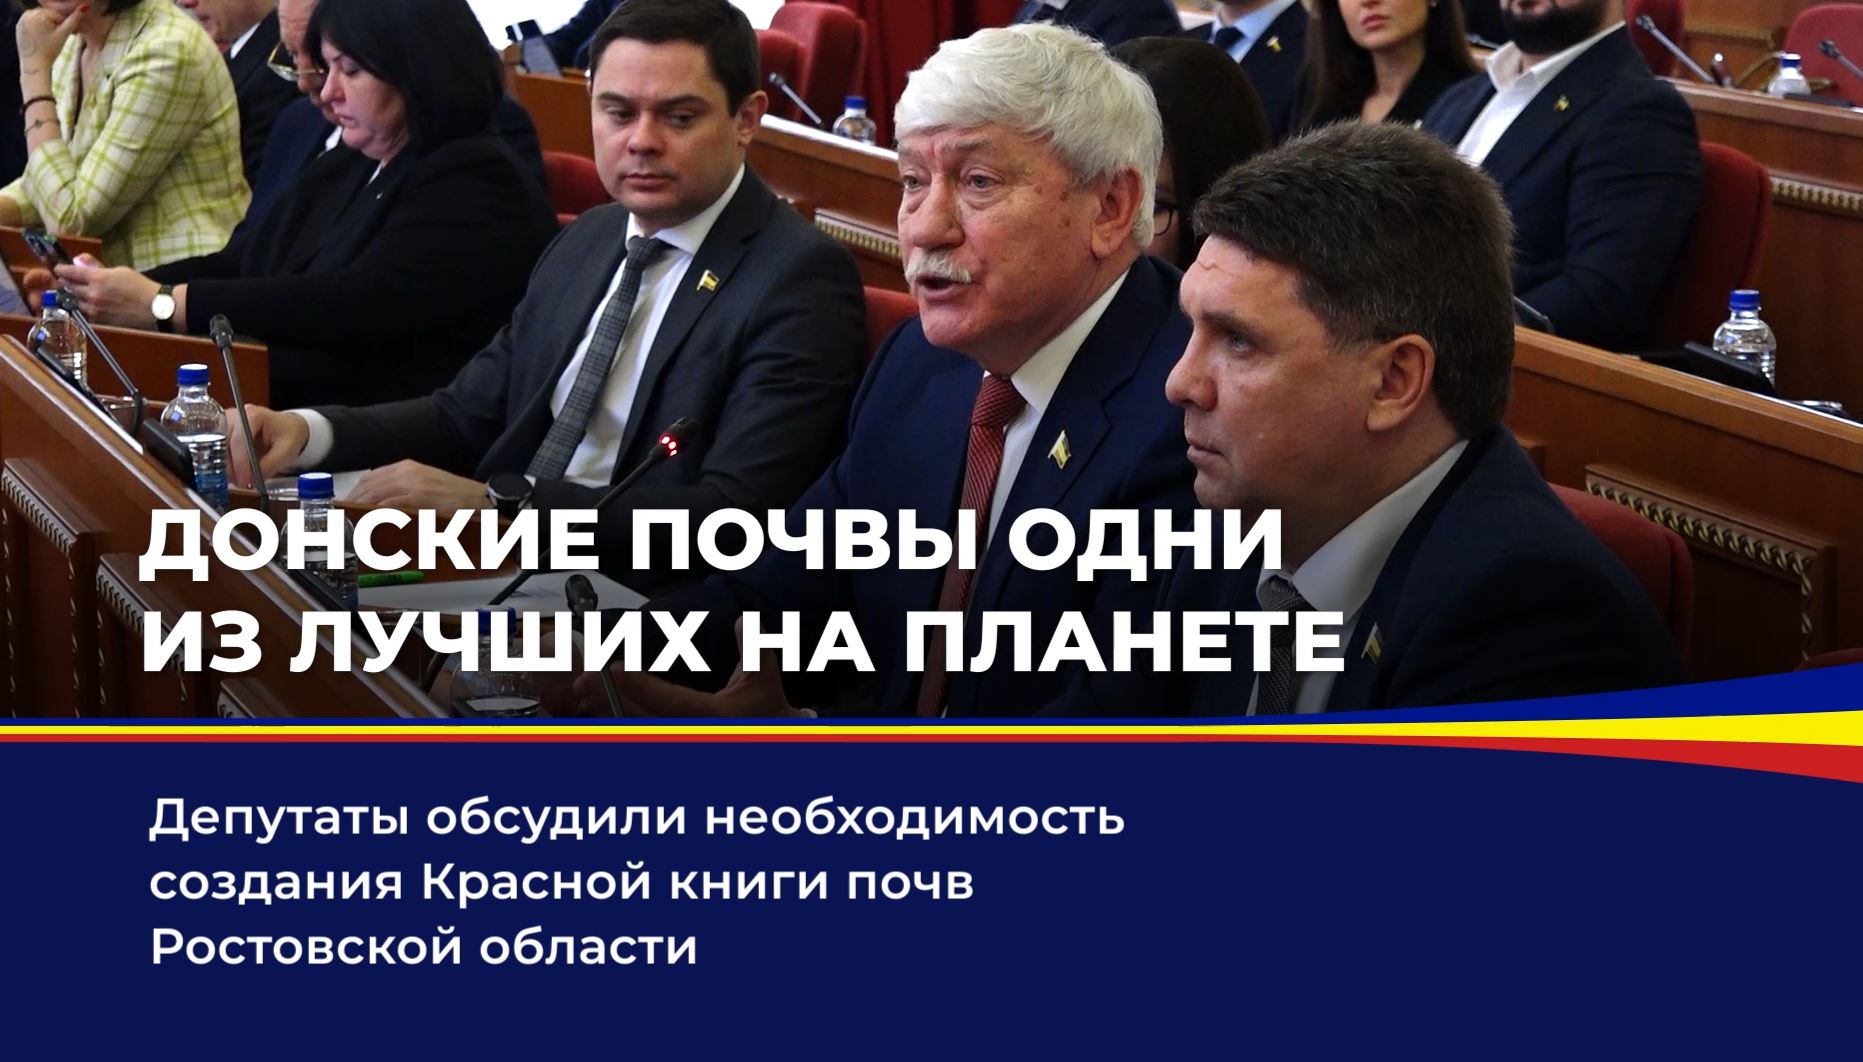 Депутаты обсудили необходимость создания Красной книги почв Ростовской области